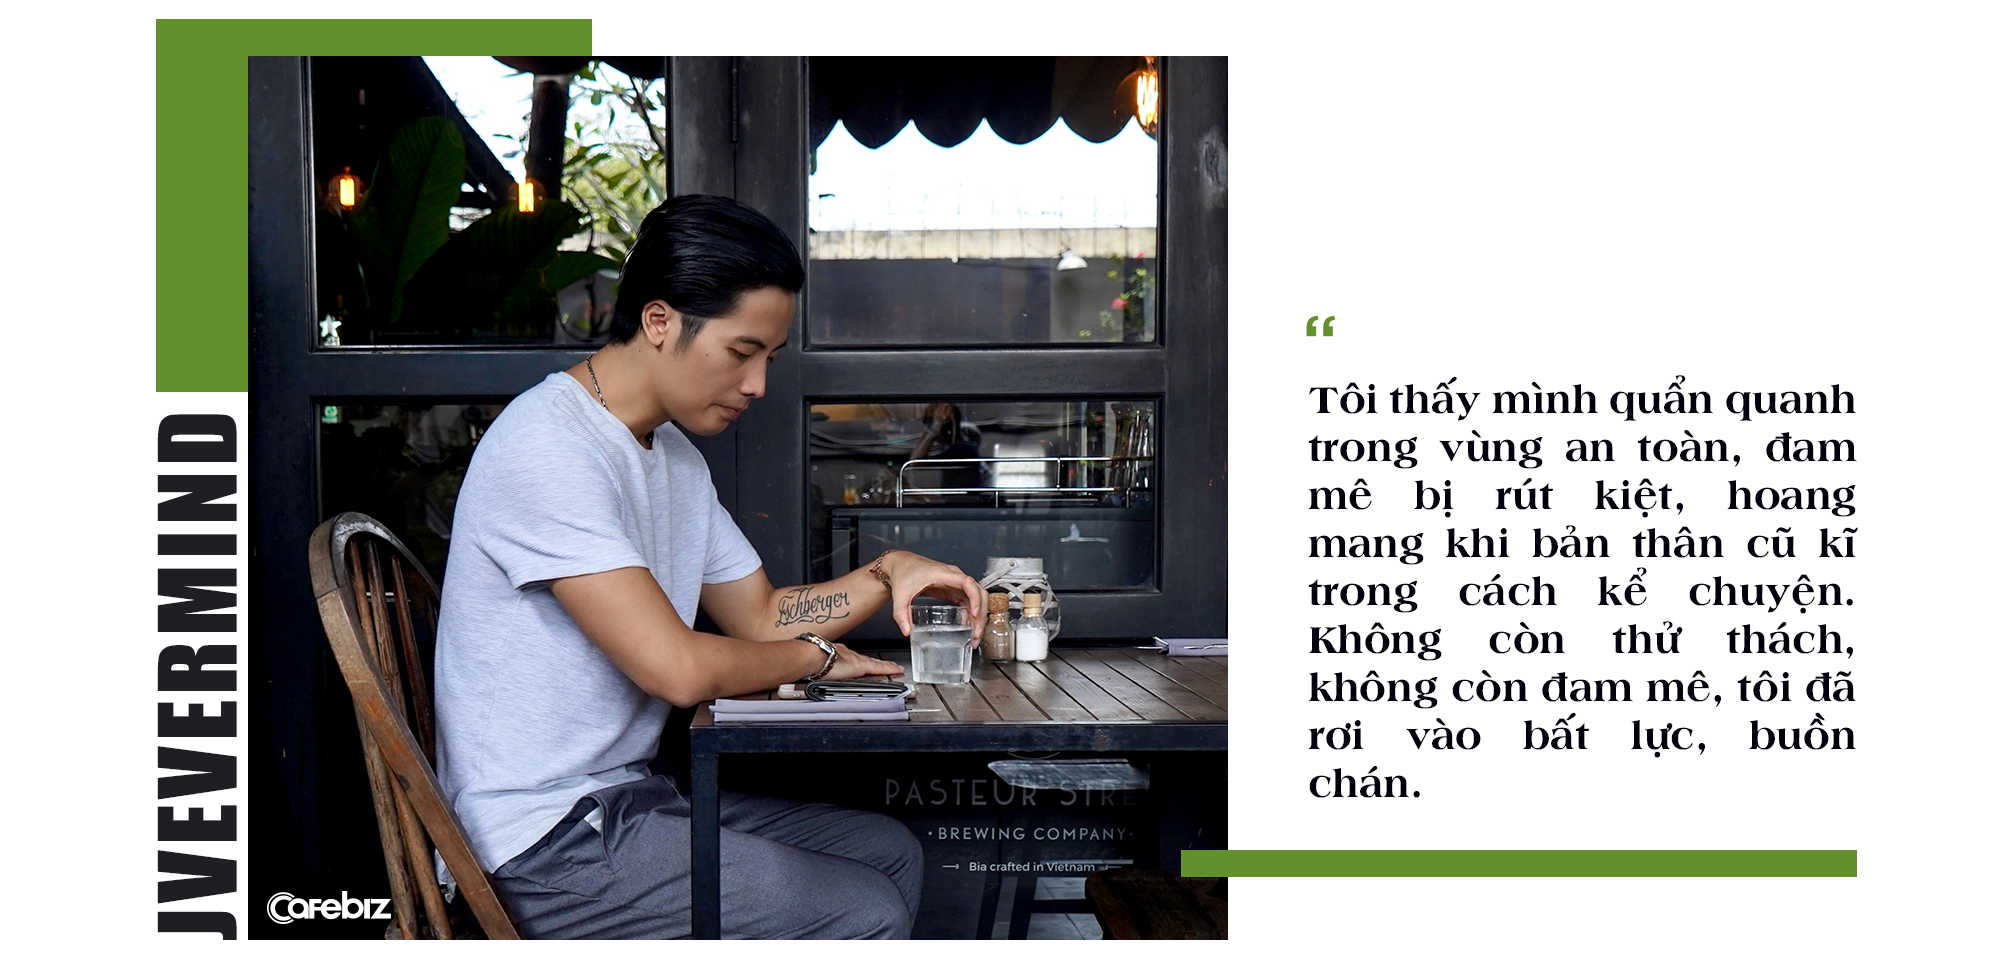 JV Trần Đức Việt: Thành công, không phải là cảm thấy thỏa mãn với những gì đạt được, mà là hài lòng với những gì mình đã đánh đổi” - Ảnh 3.